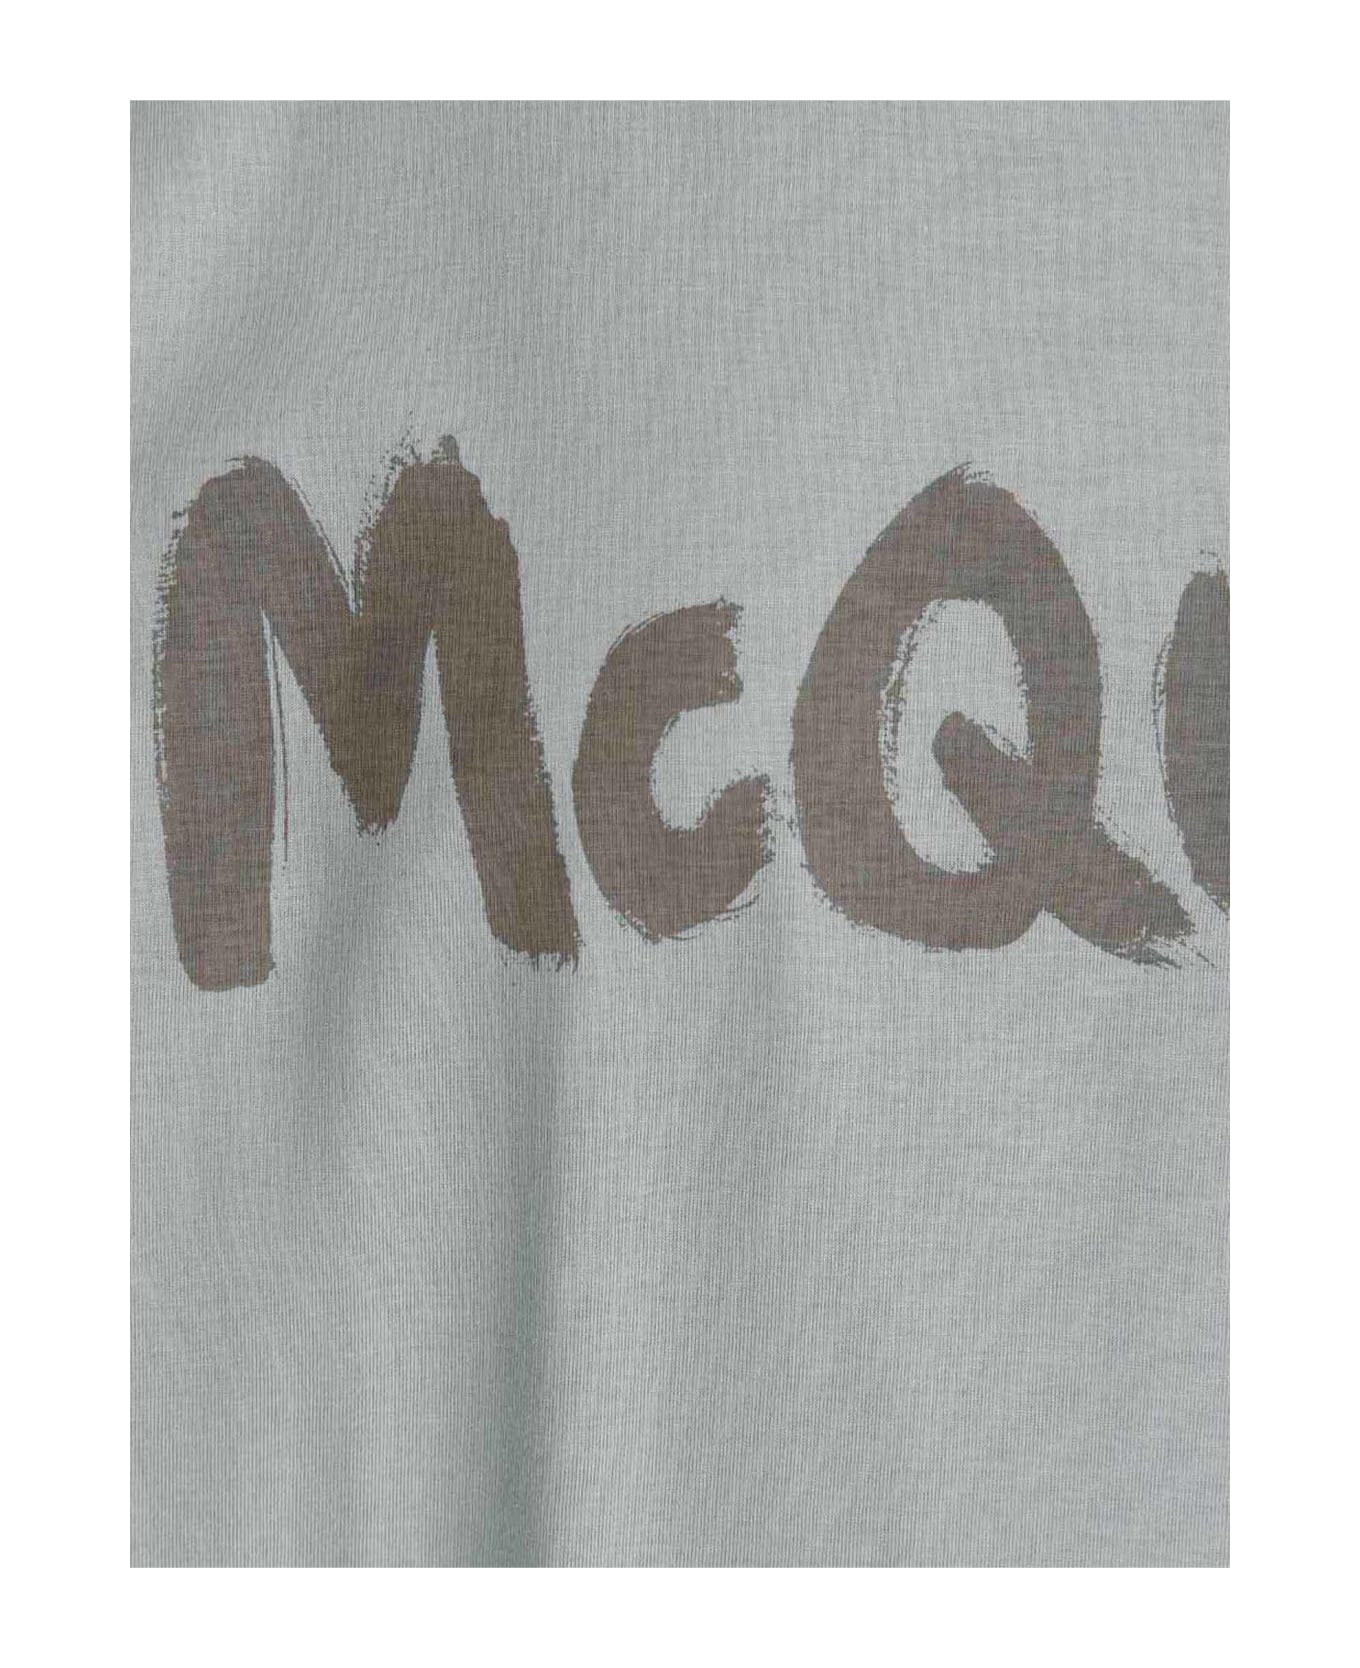 Alexander McQueen Graffiti Print T-shirt - Dove Grey Mix